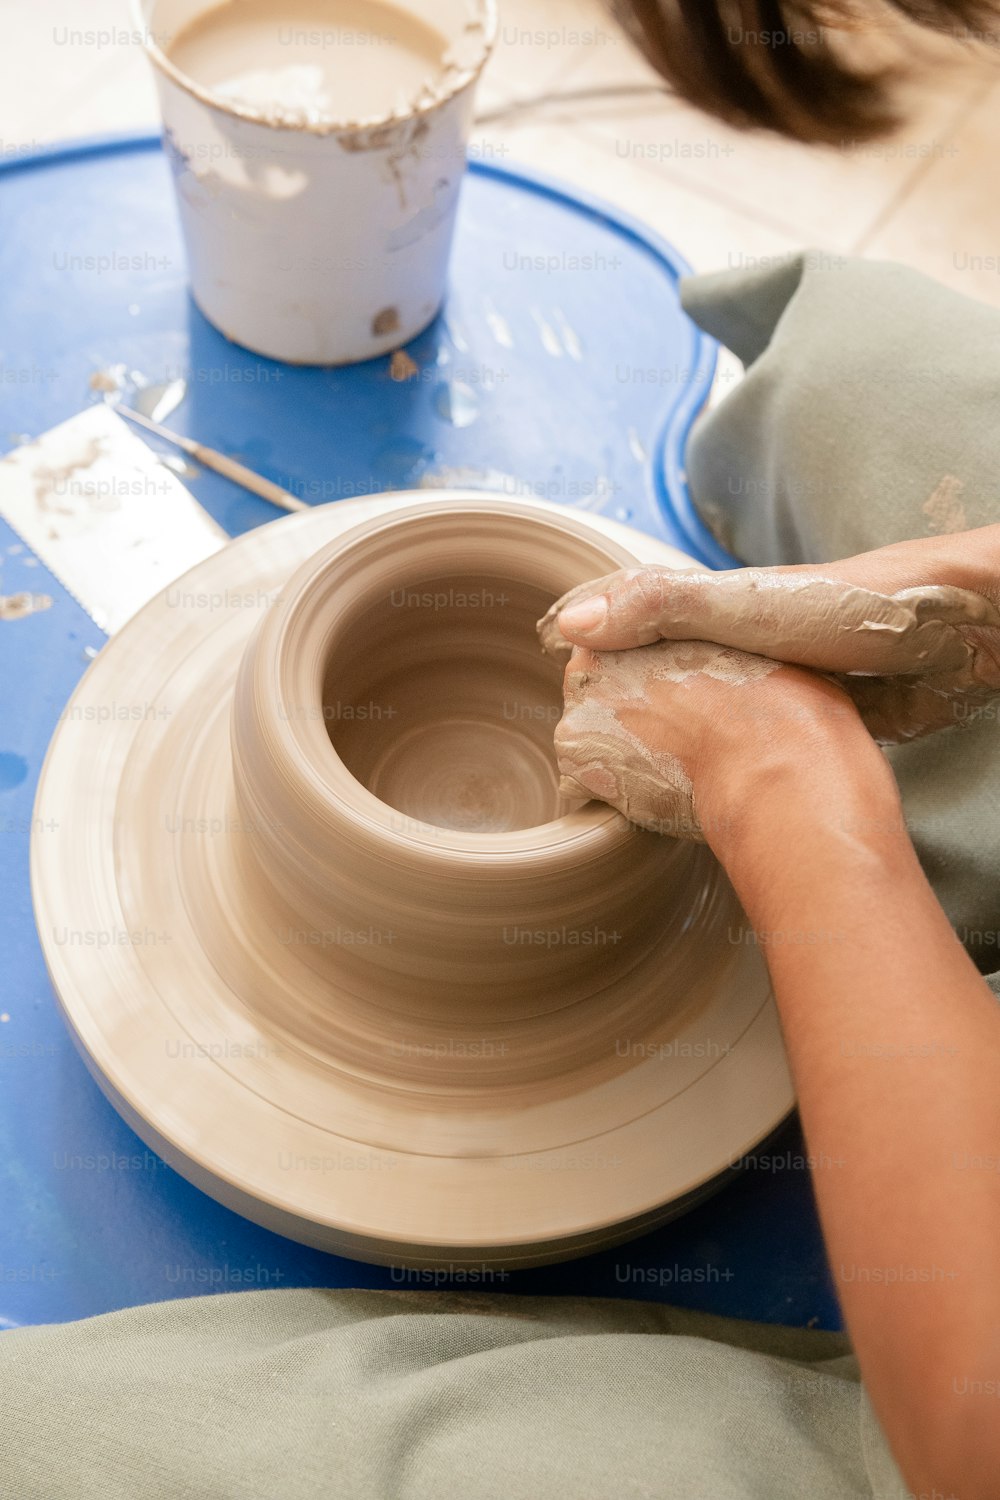 Una persona está haciendo un jarrón en una rueda de cerámica